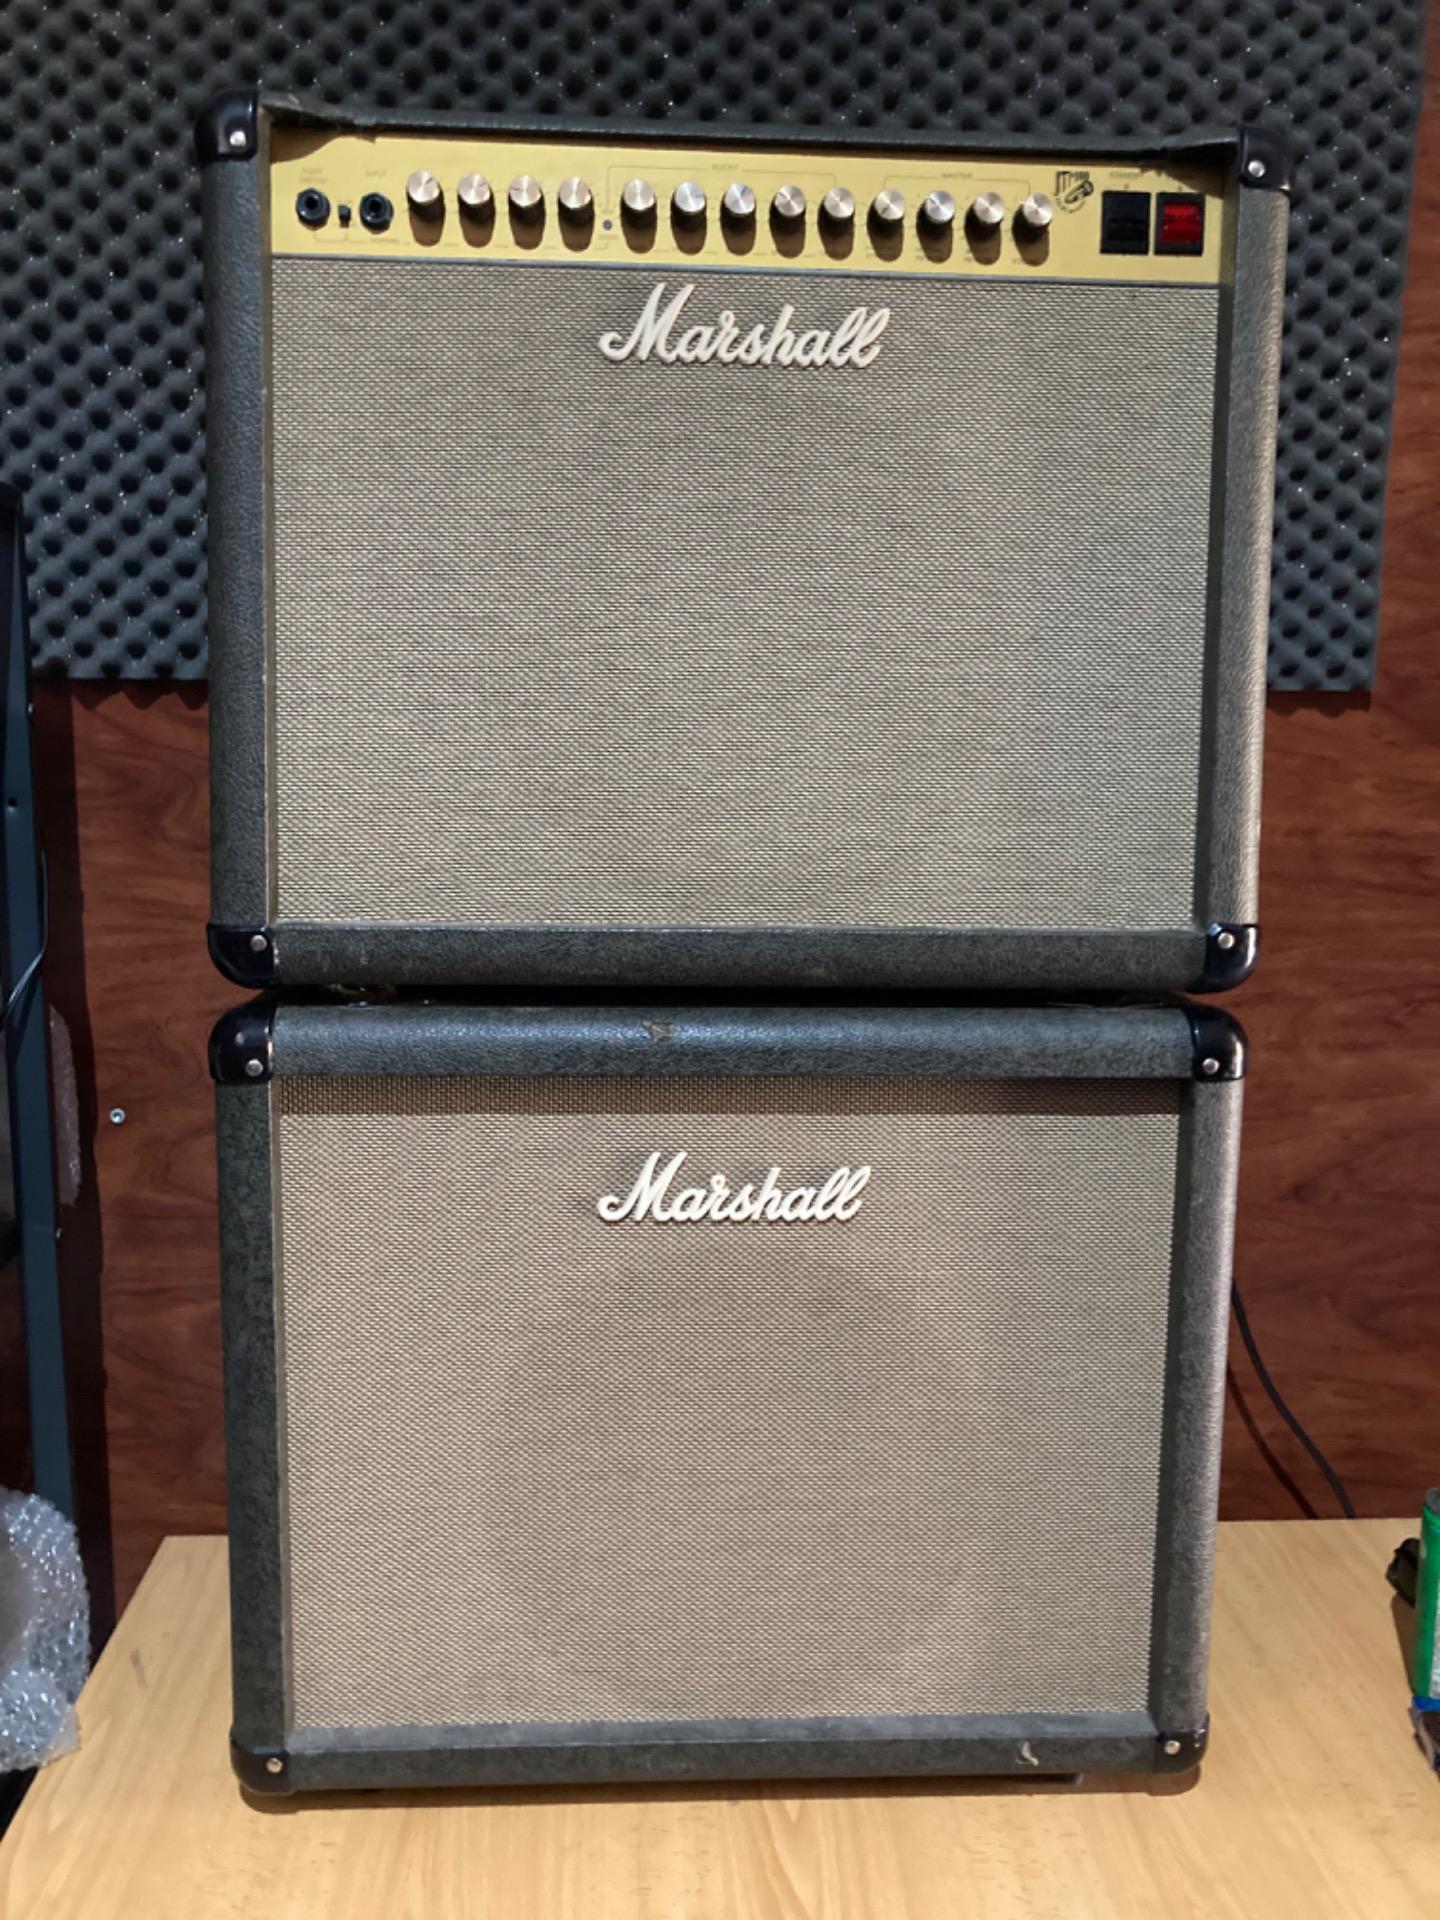 Foto 2 de Amplificador de guitarra Marshall Jtm60 + pantalla Marshall 60